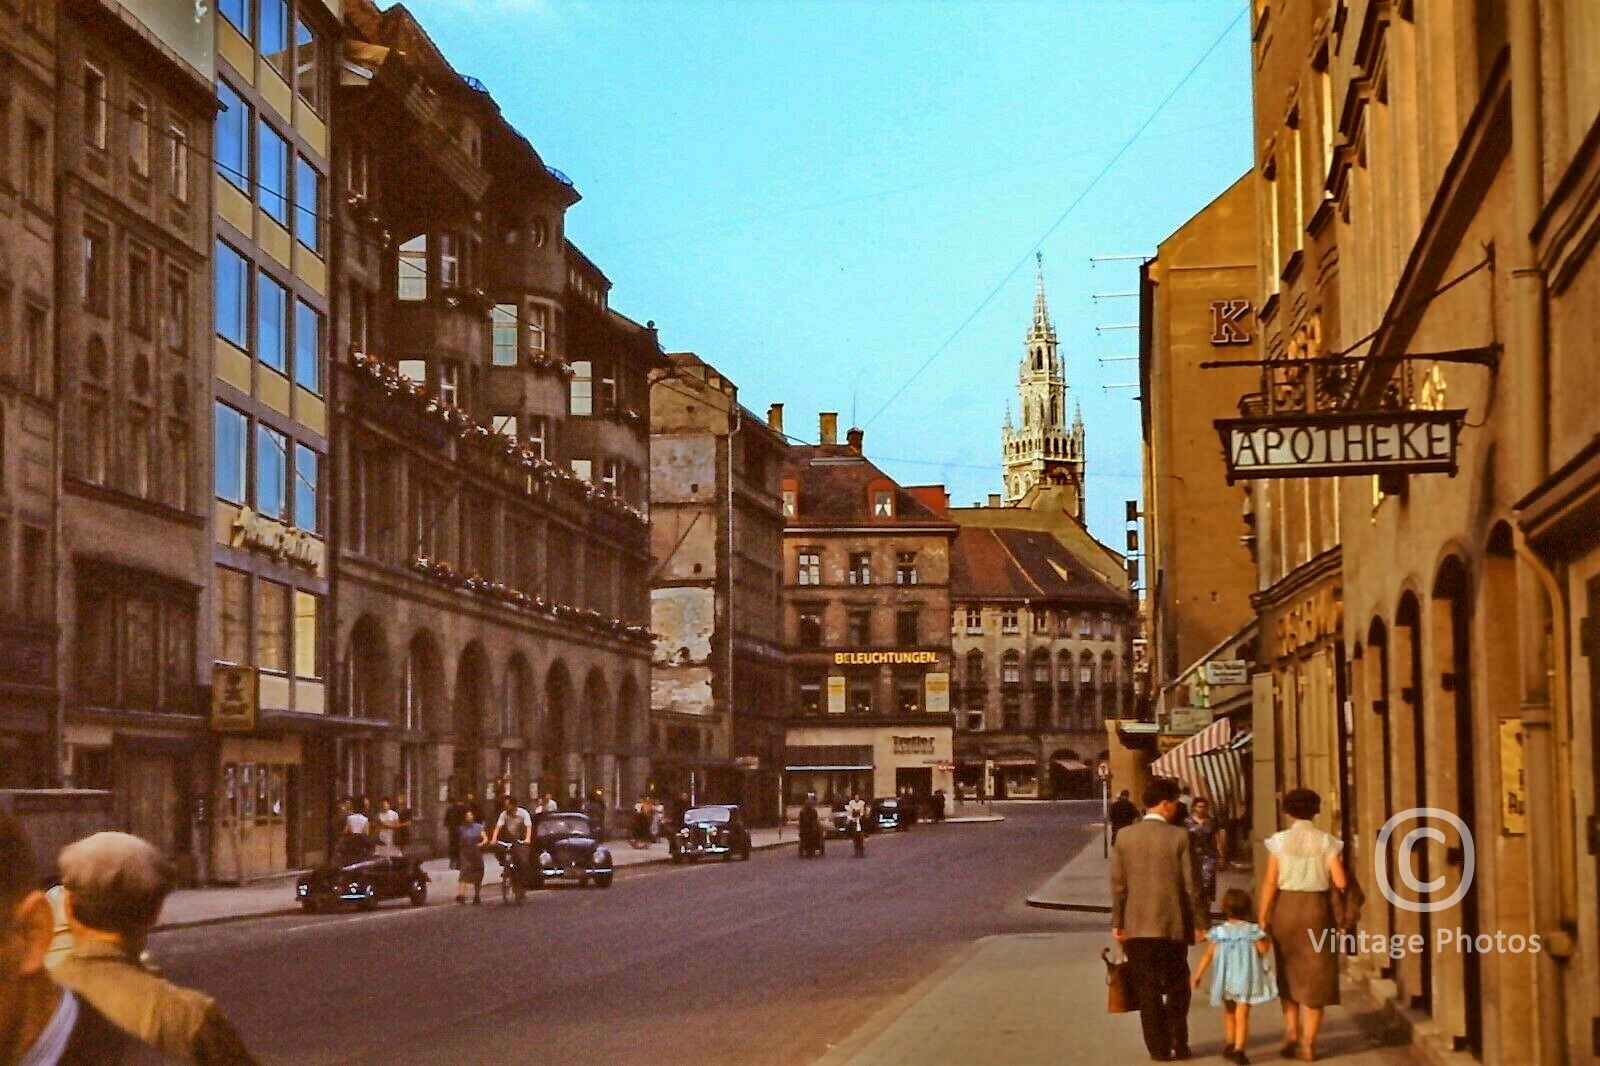 1960s Munich Street Scene, Shops, Cars & People